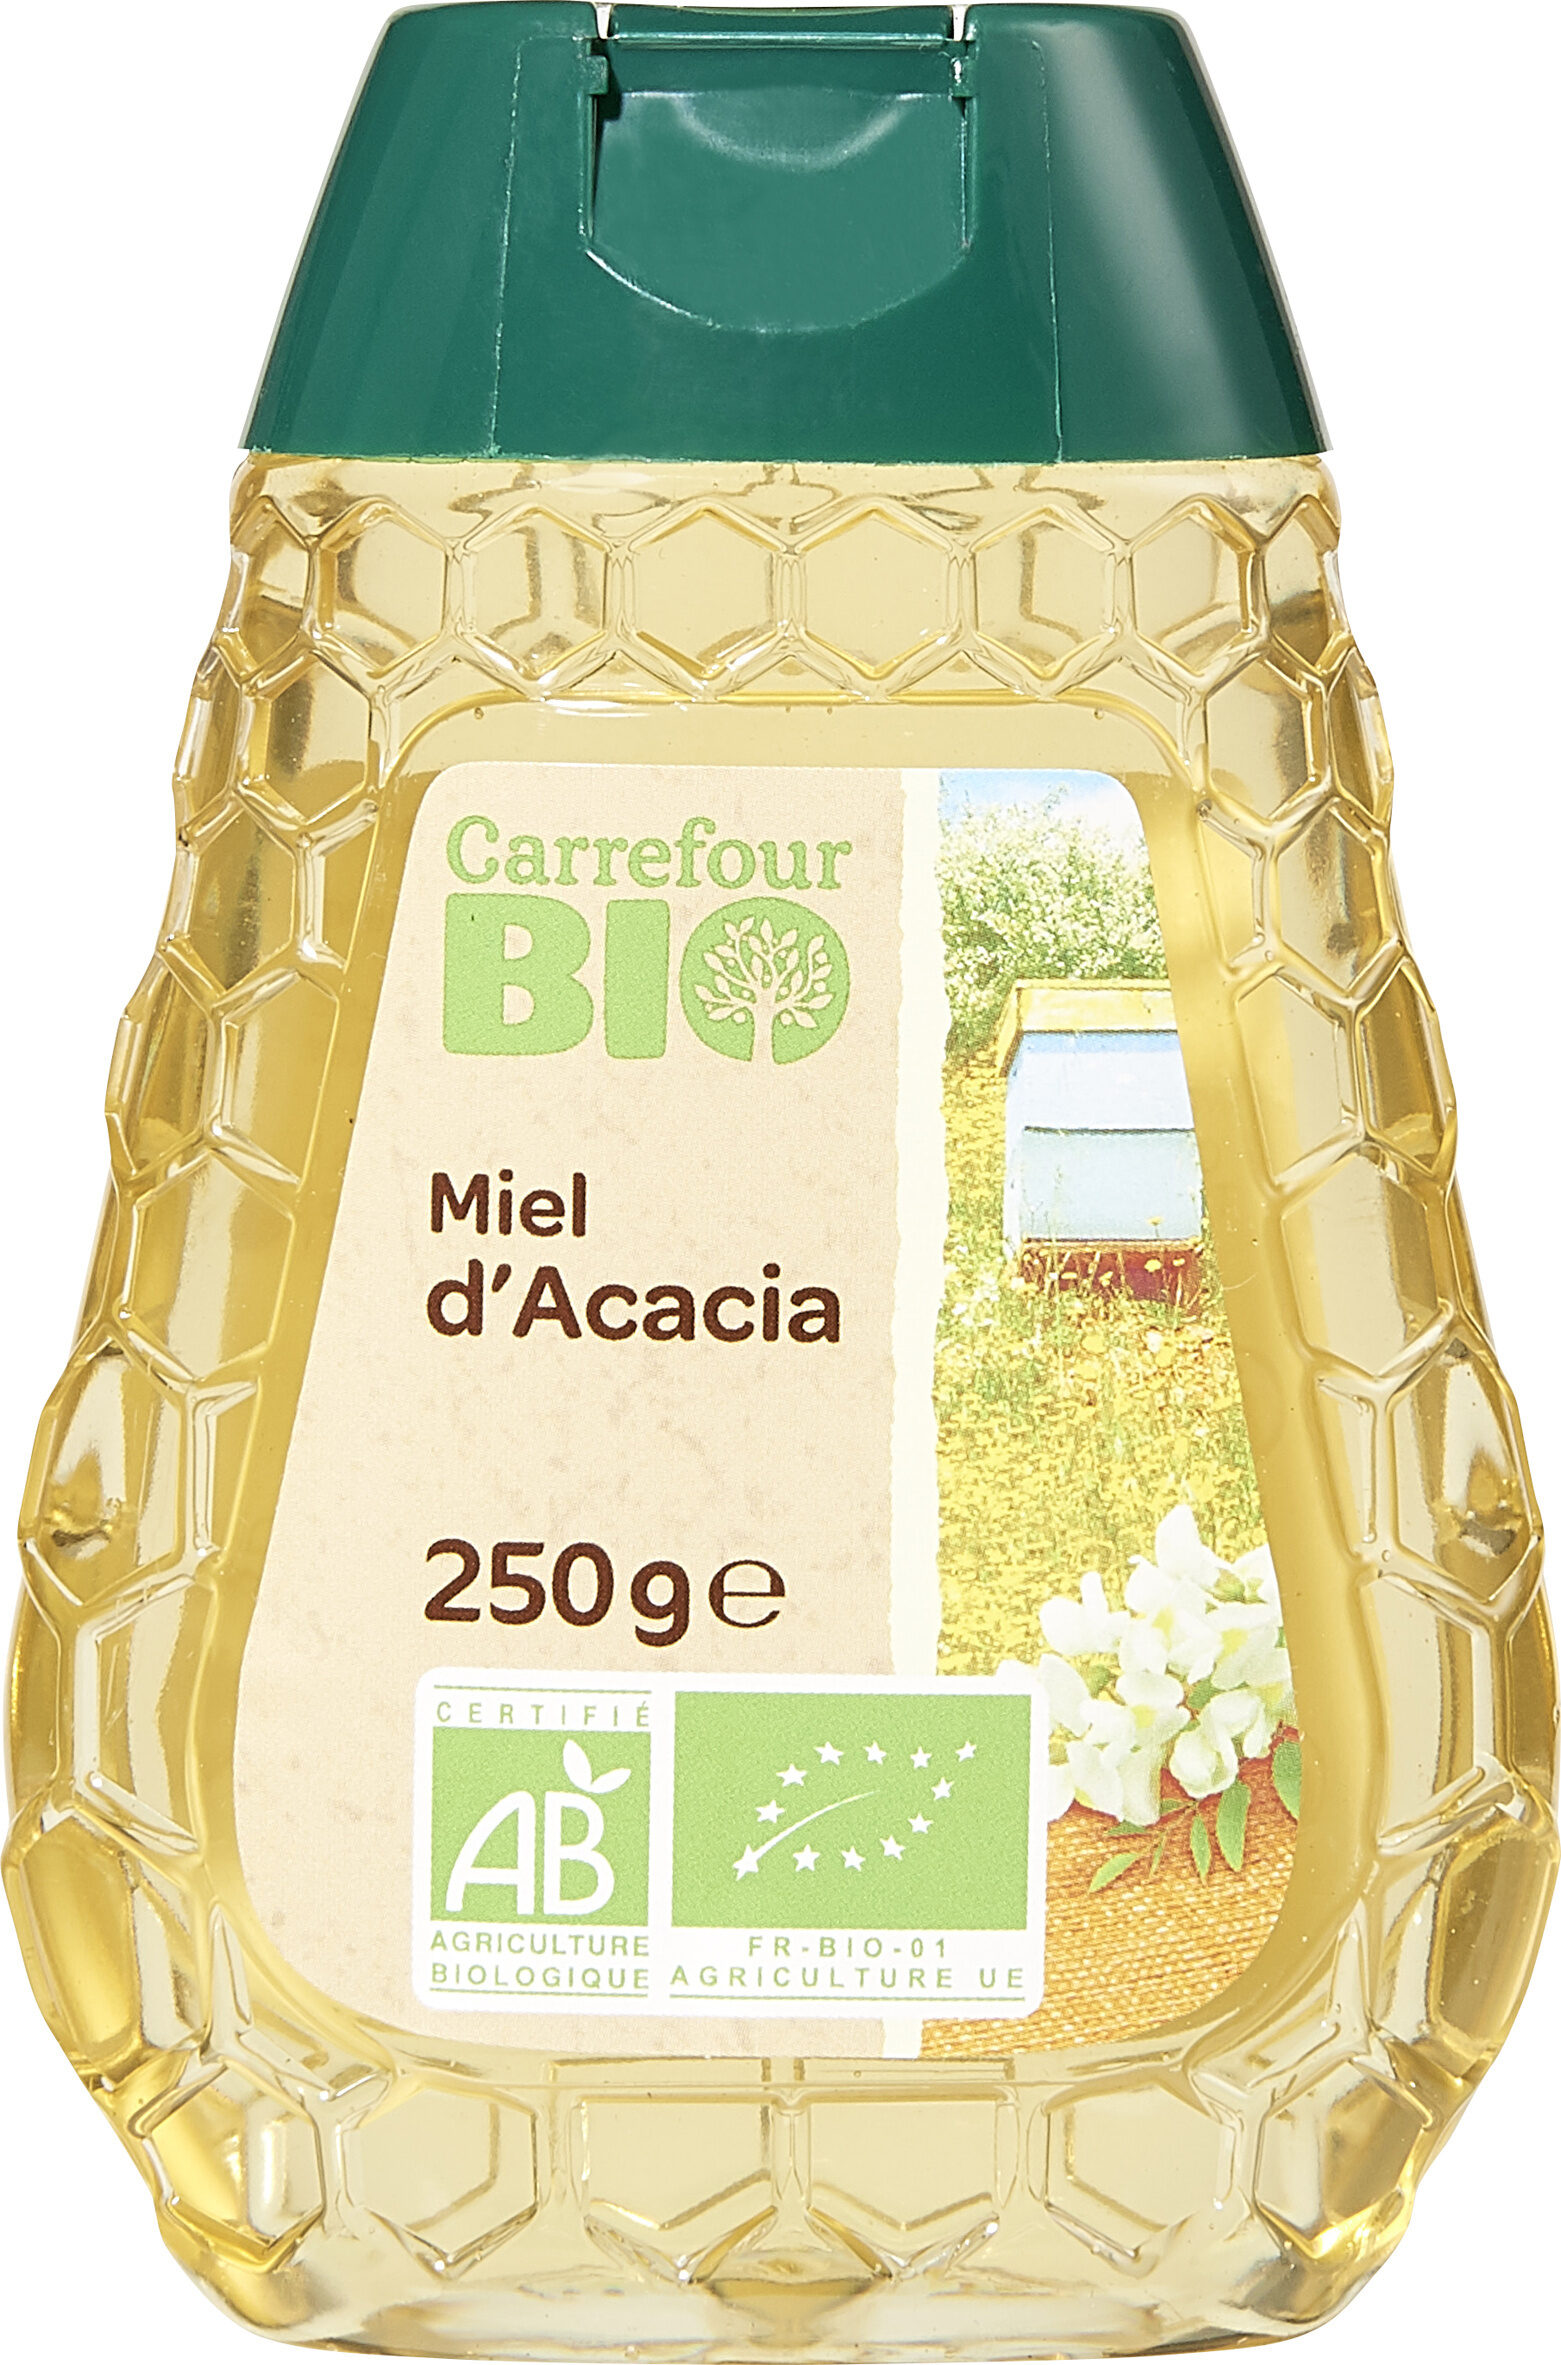 Miel d'acacia - Product - fr